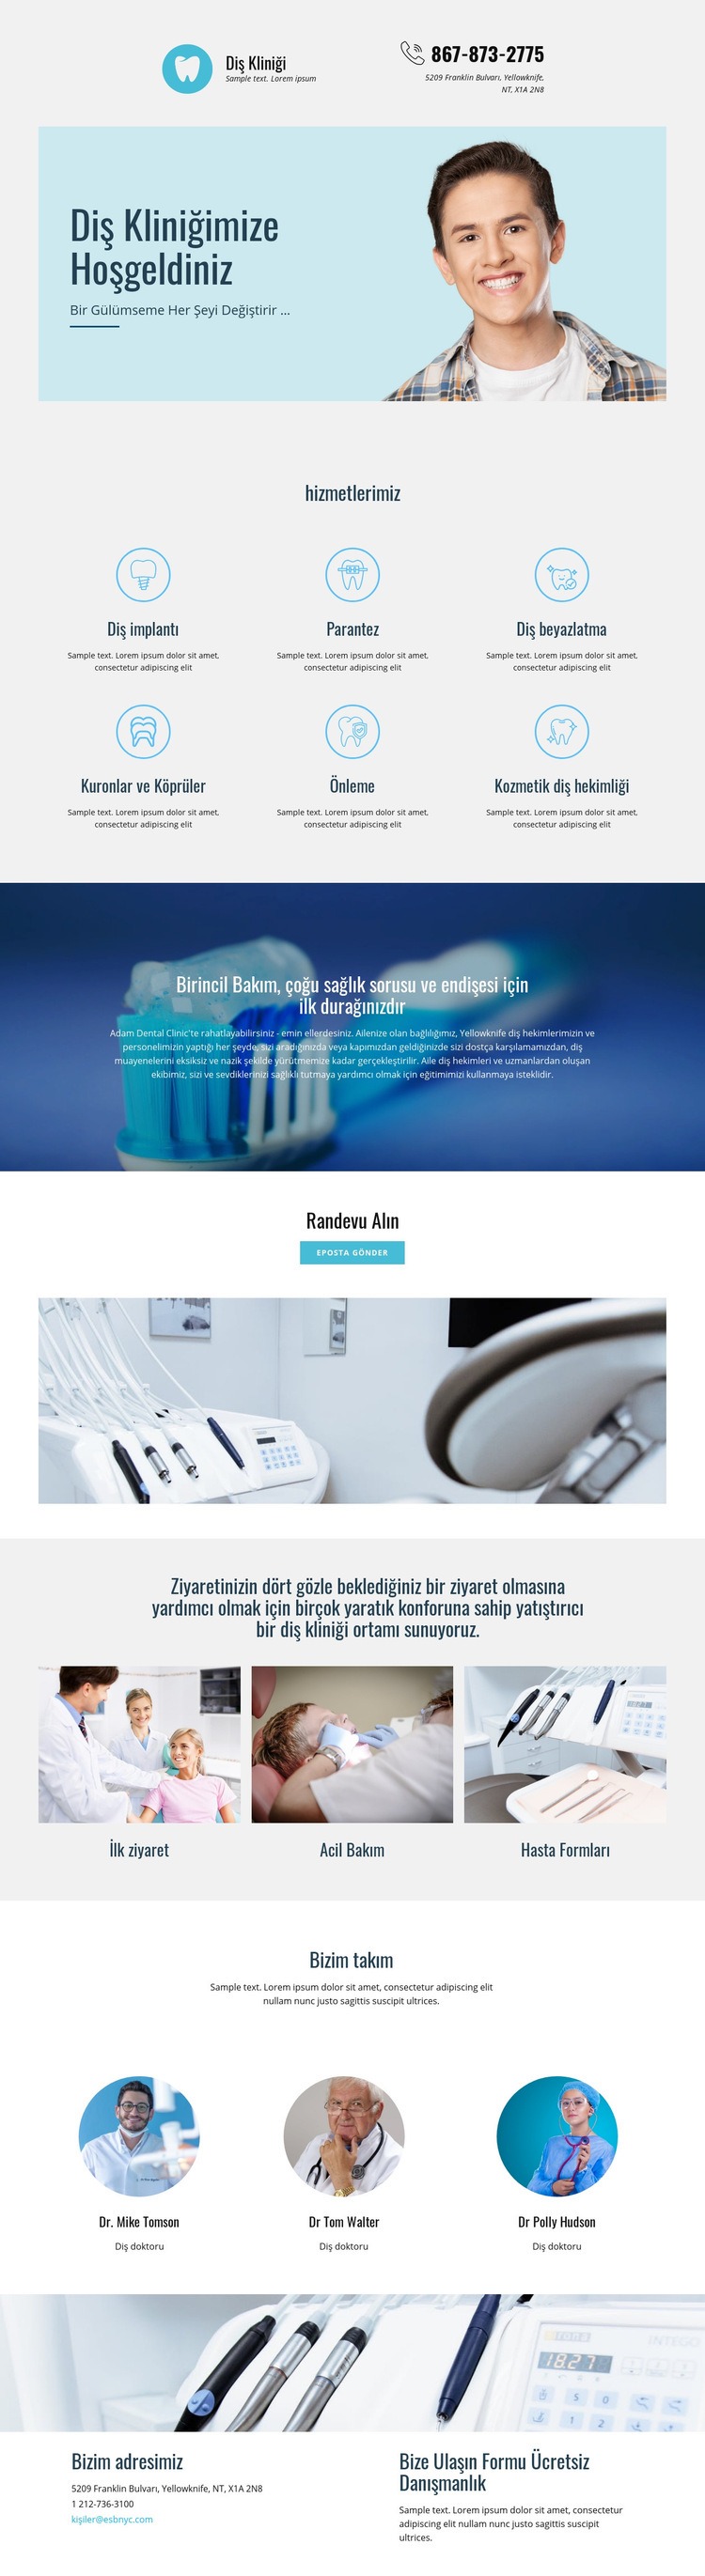 Diş hekimliği kliniği Web sitesi tasarımı